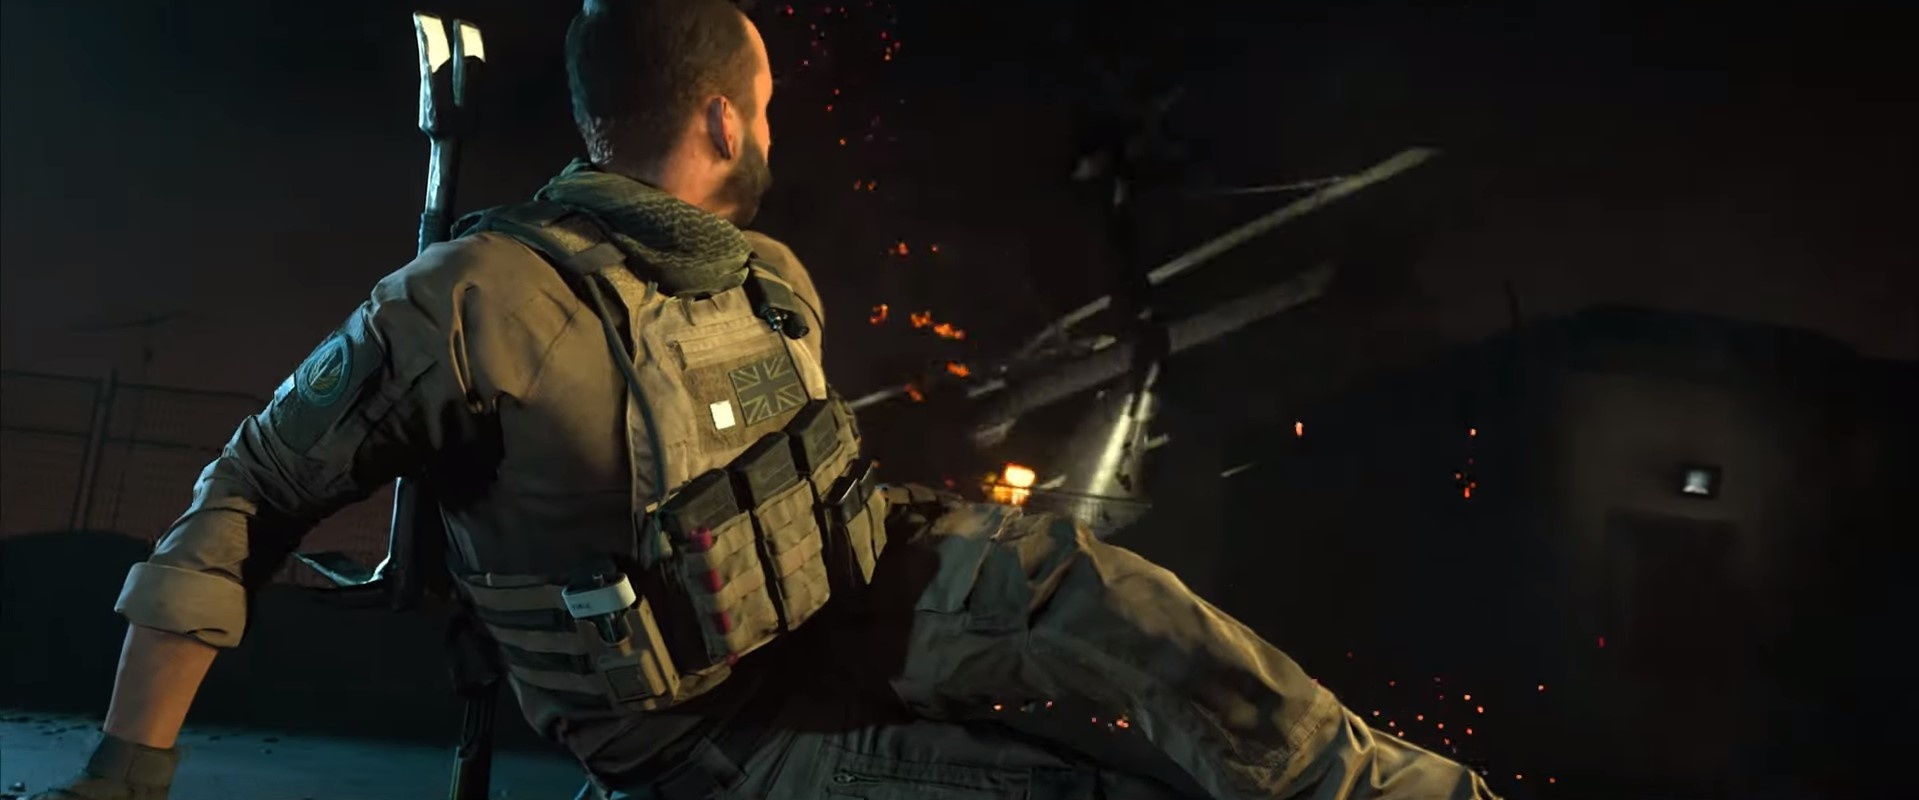 Представлен релизный трейлер Call of Duty: Modern Warfare